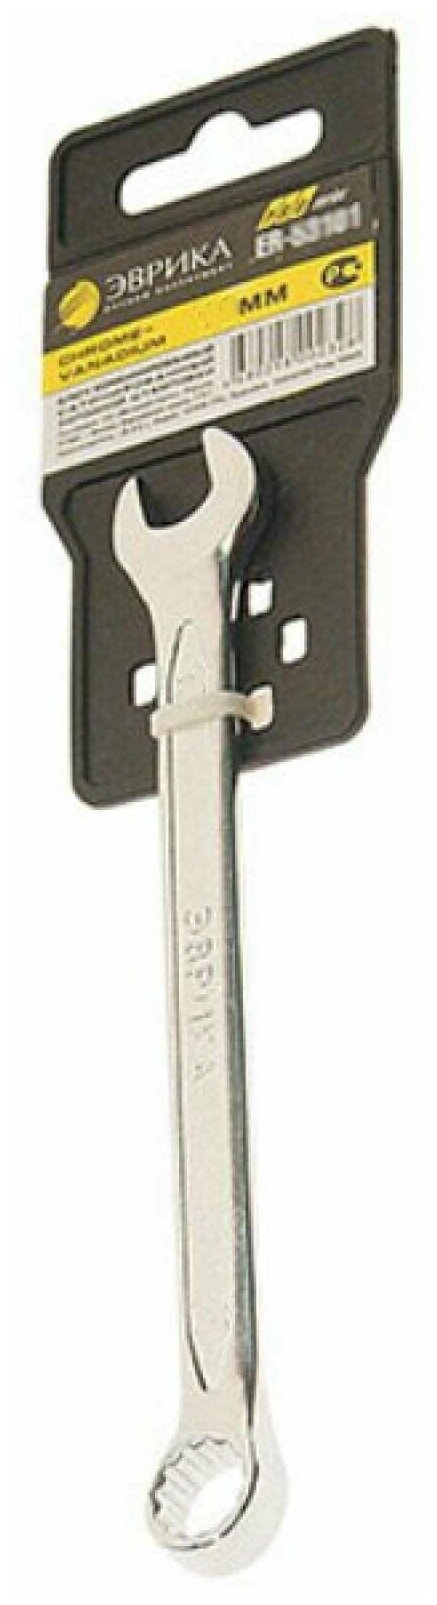 Ключ комбинированный 27мм ER-53271 (Chrome vanadium) на держателеPRO эврика